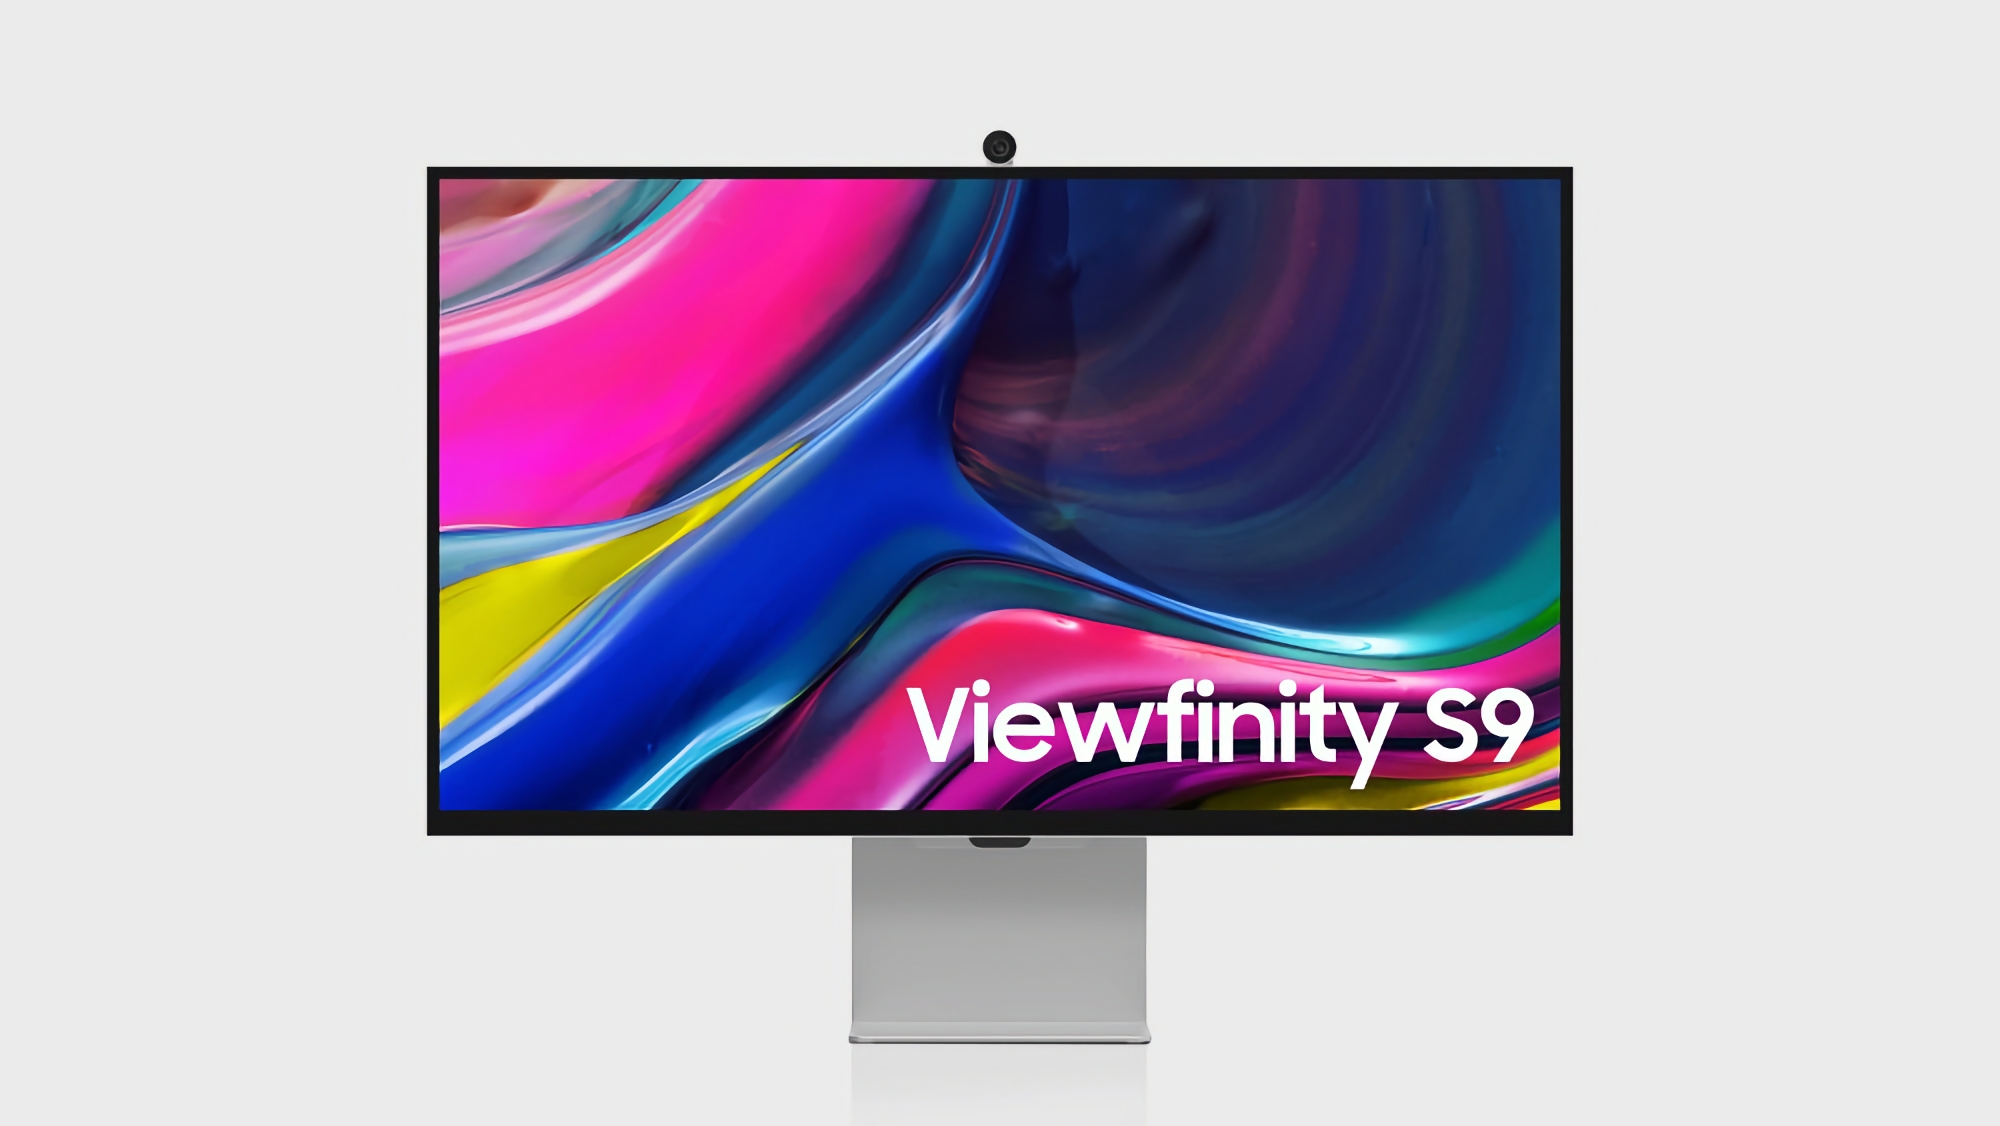 Angebot des Tages: Samsung ViewFinity S9 Monitor kann bei Amazon mit einem Rabatt von über 30% gekauft werden